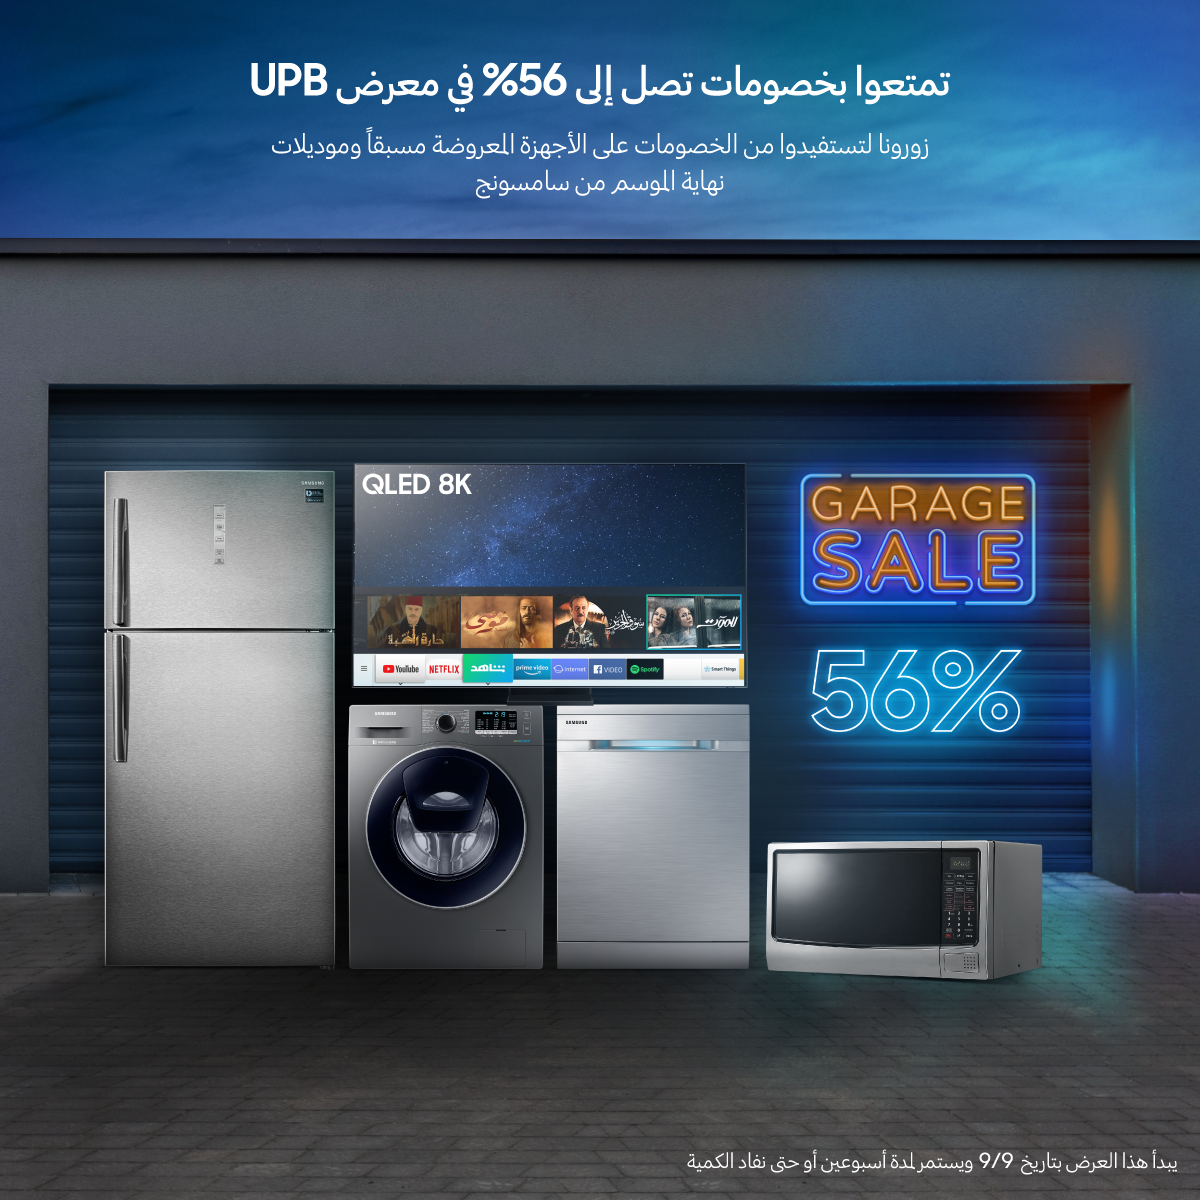 حملة خصومات 《Garage Sale》 ضمن معارض UPB أحد وكلاء 《سامسونج إلكترونيكس المشرق العربي》